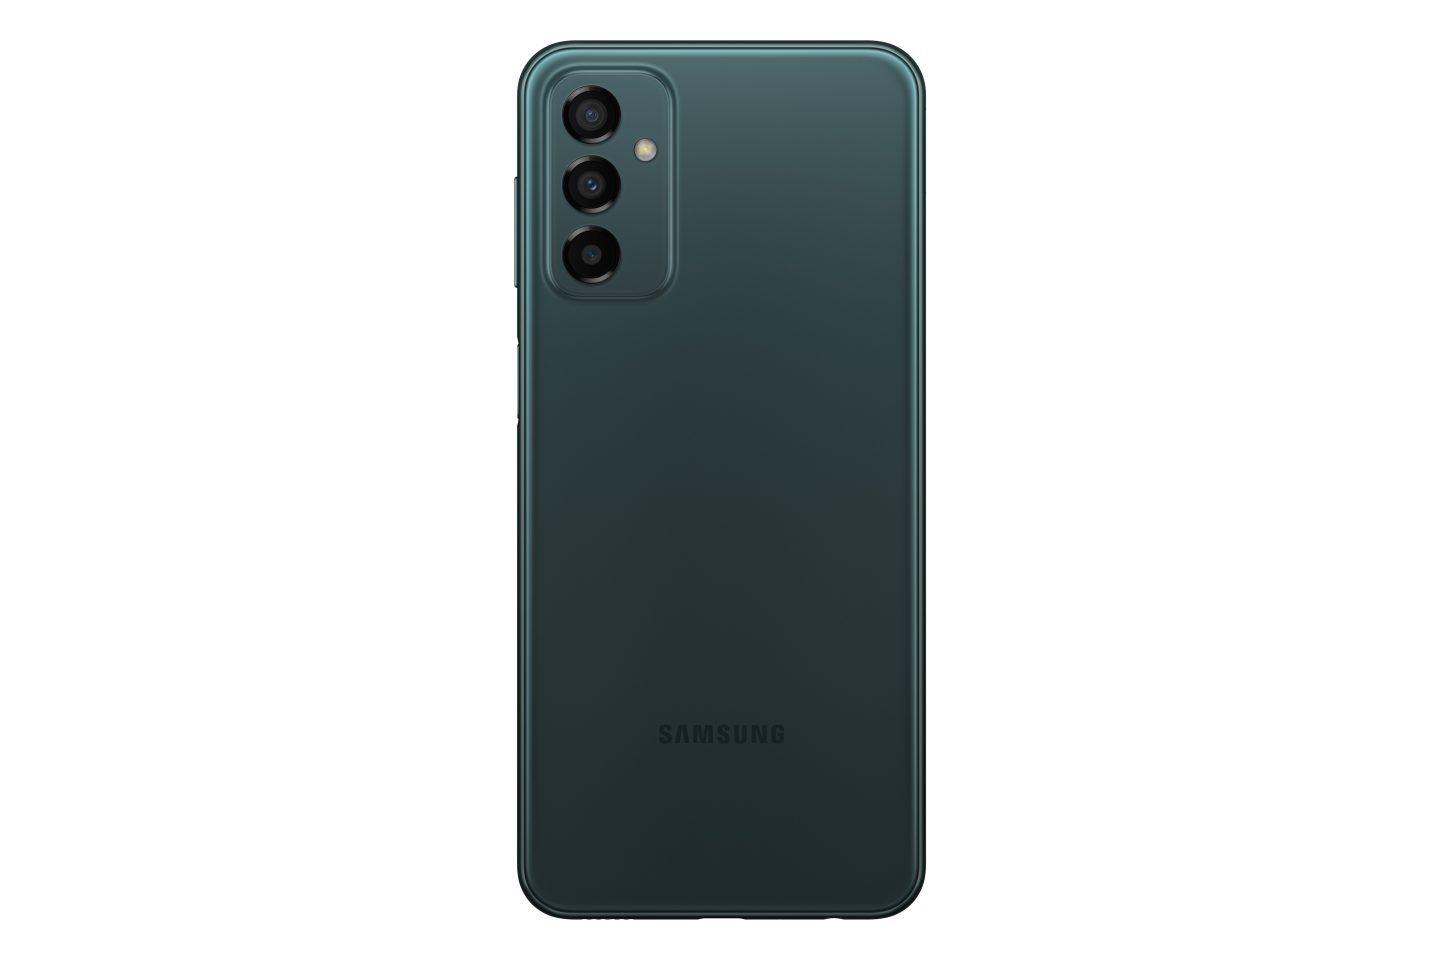 Samsung เปิดตัวมือถือ 4 รุ่น Galaxy A13 / A23 และ Galaxy M23 5G / M33 5G